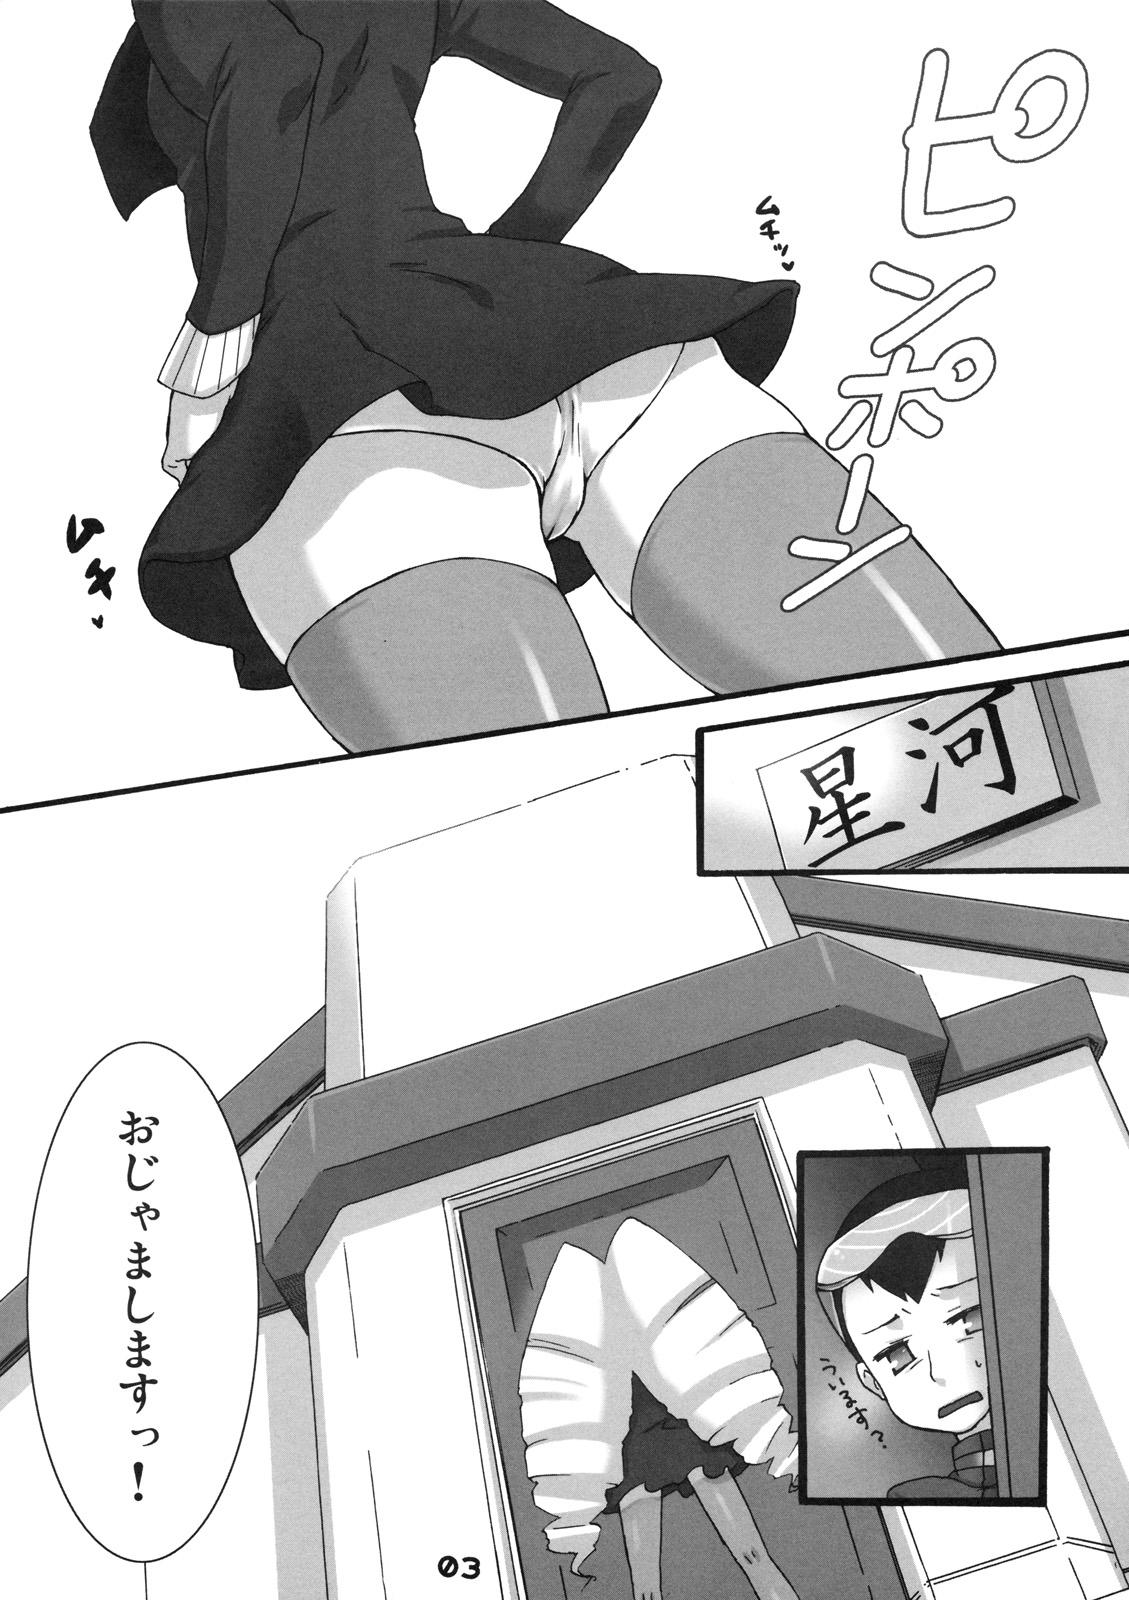 Eating Onegai Iincho - Megaman Mega man star force Sola - Page 2